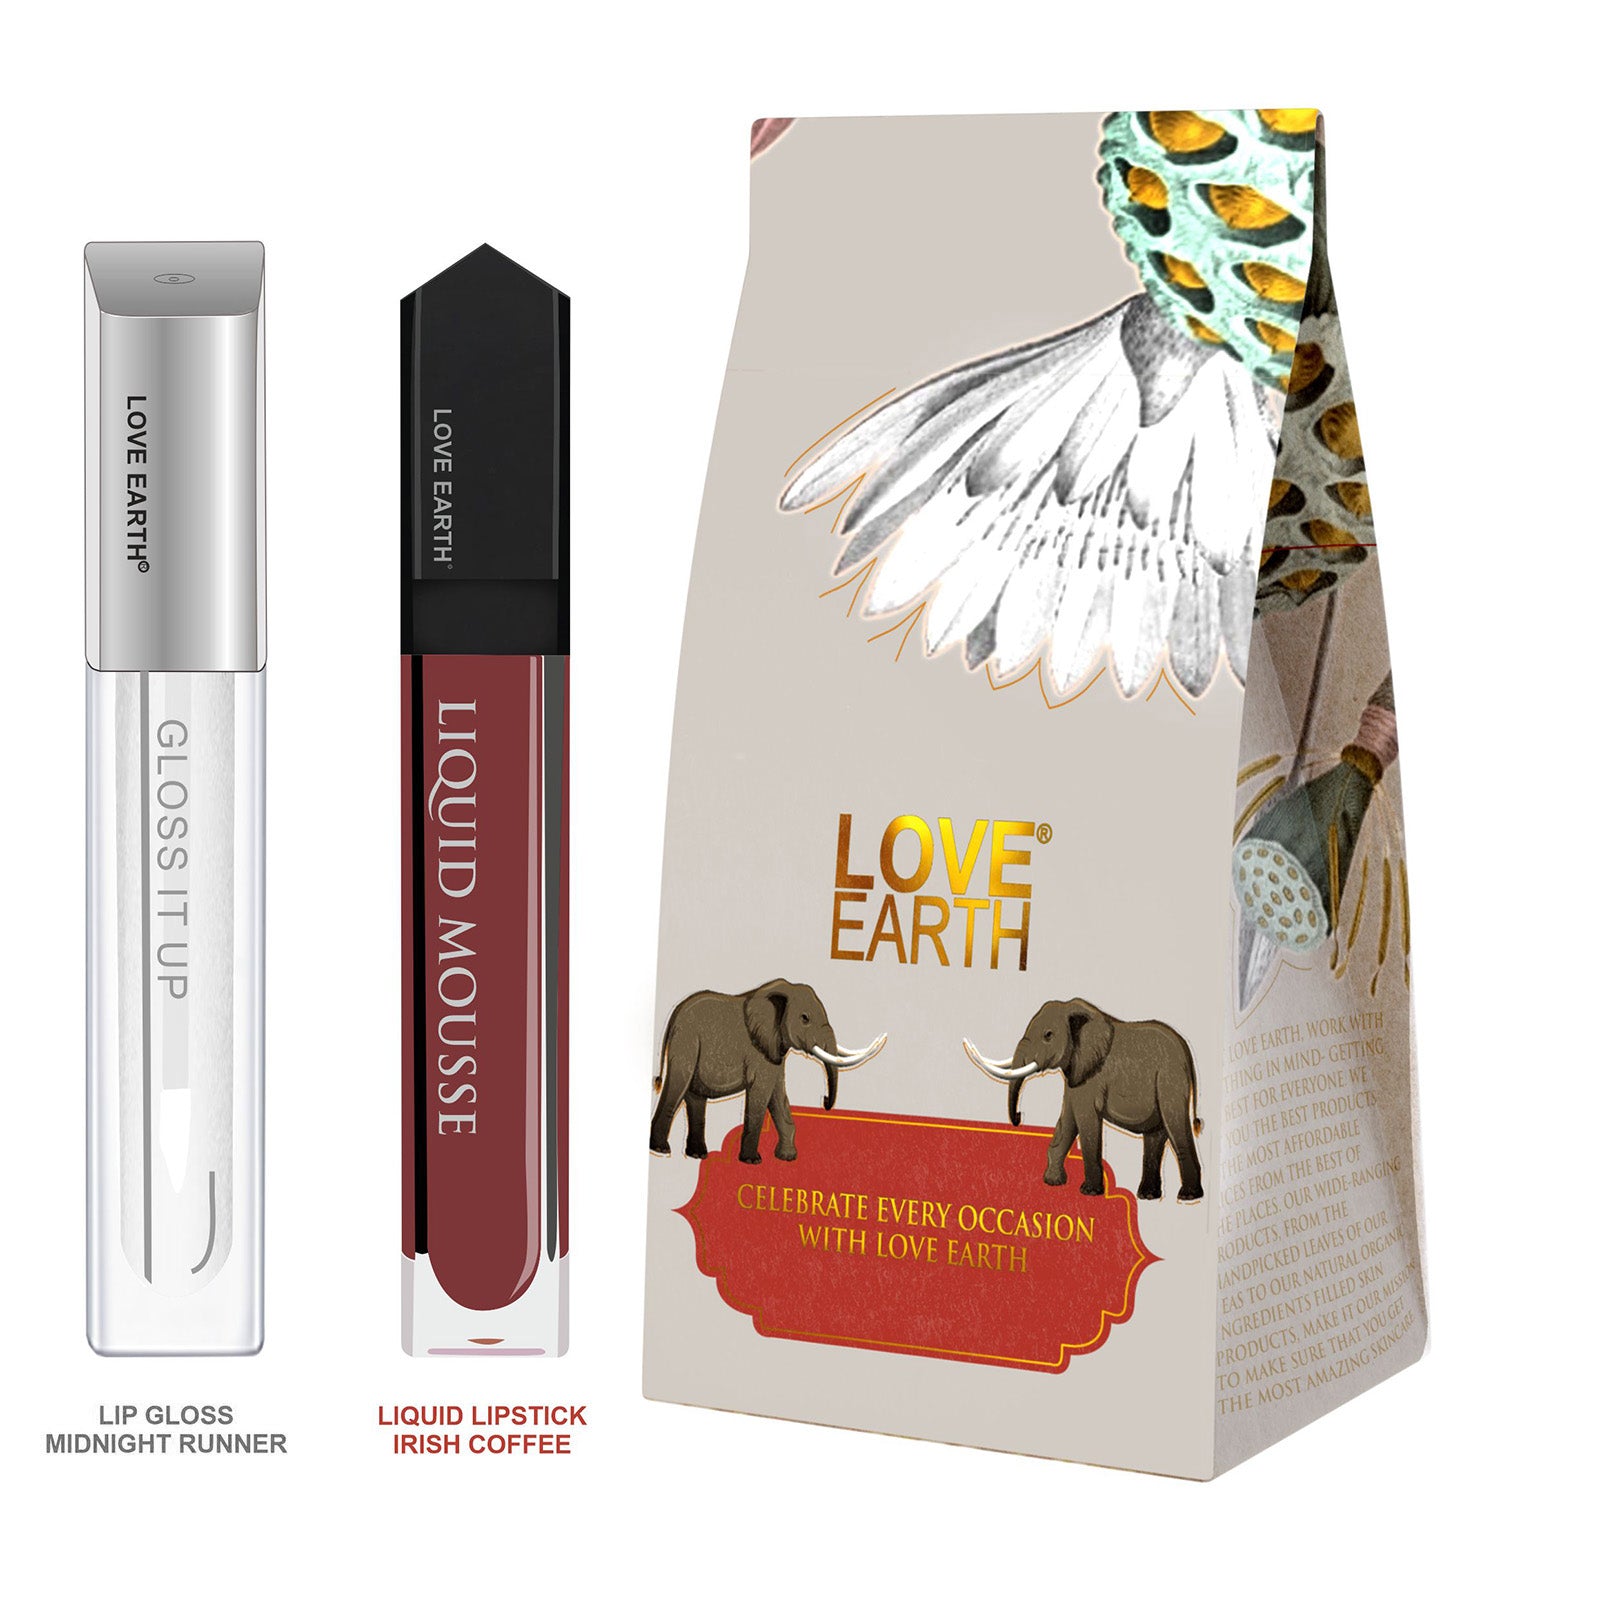 Liquid Lipstick Irish Coffee & Lip Gloss Midnight Runner Gift Pack